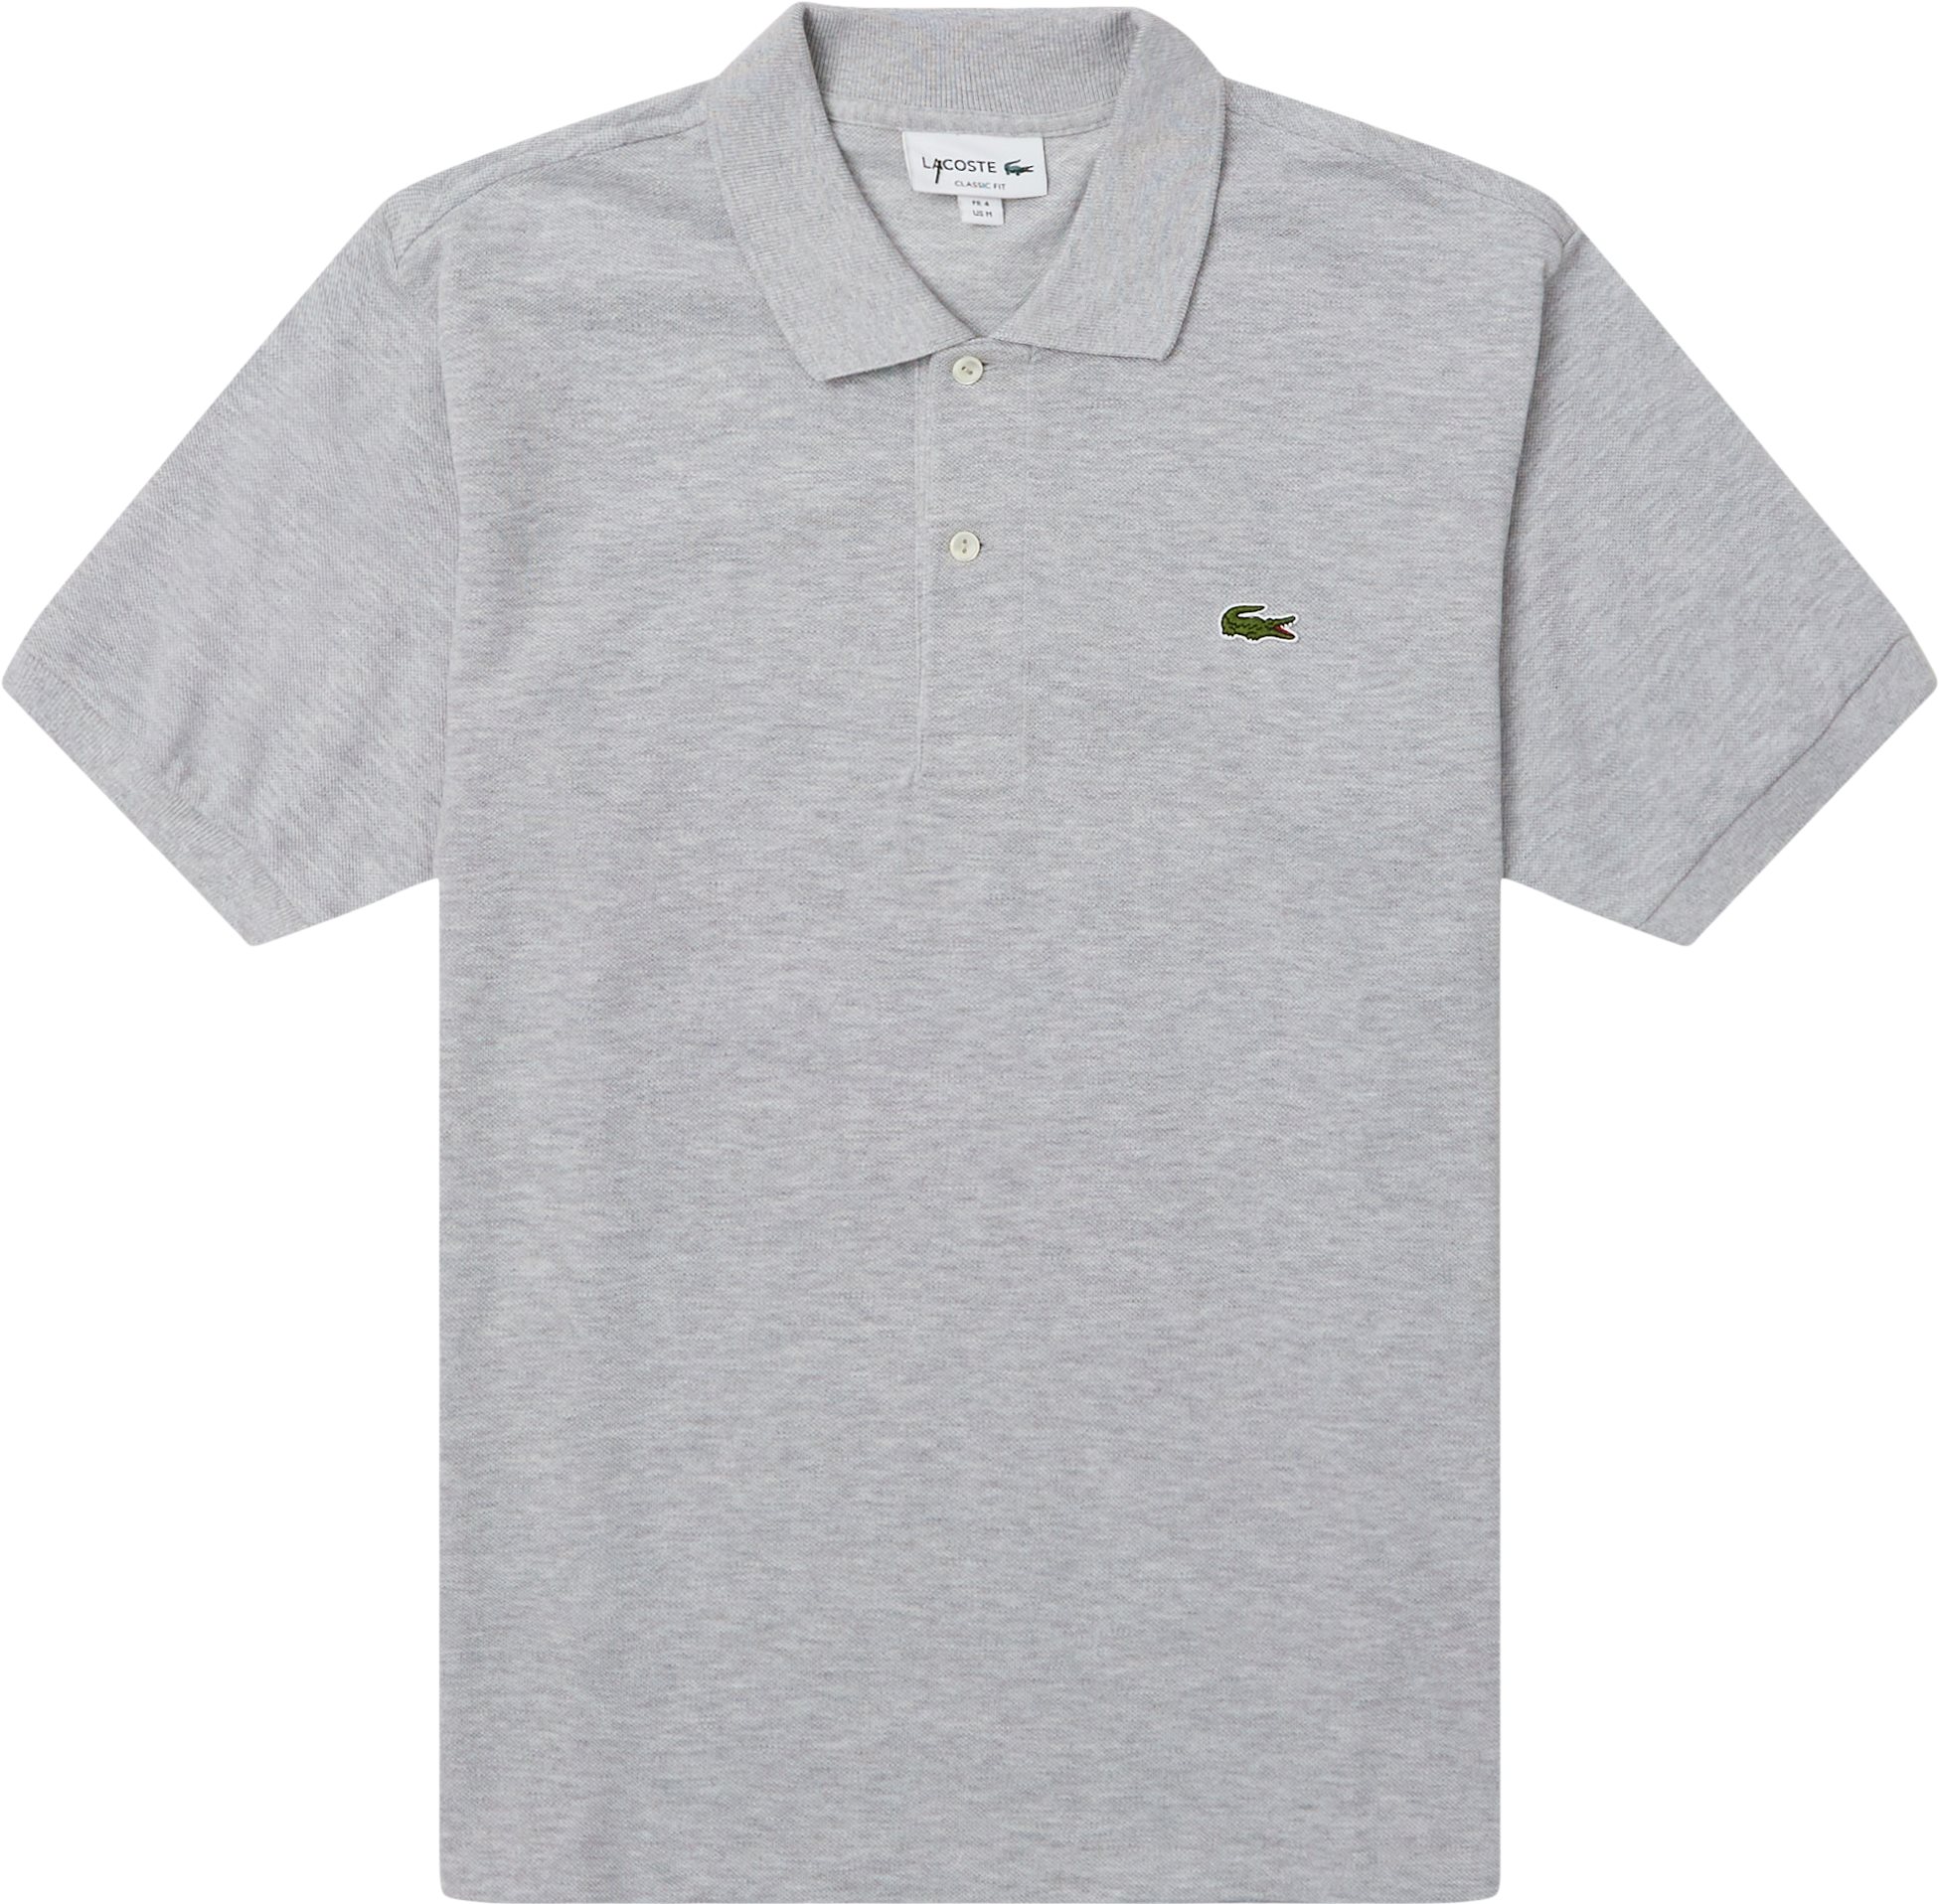 L1264 Polo Tee - T-shirts - Regular fit - Grå